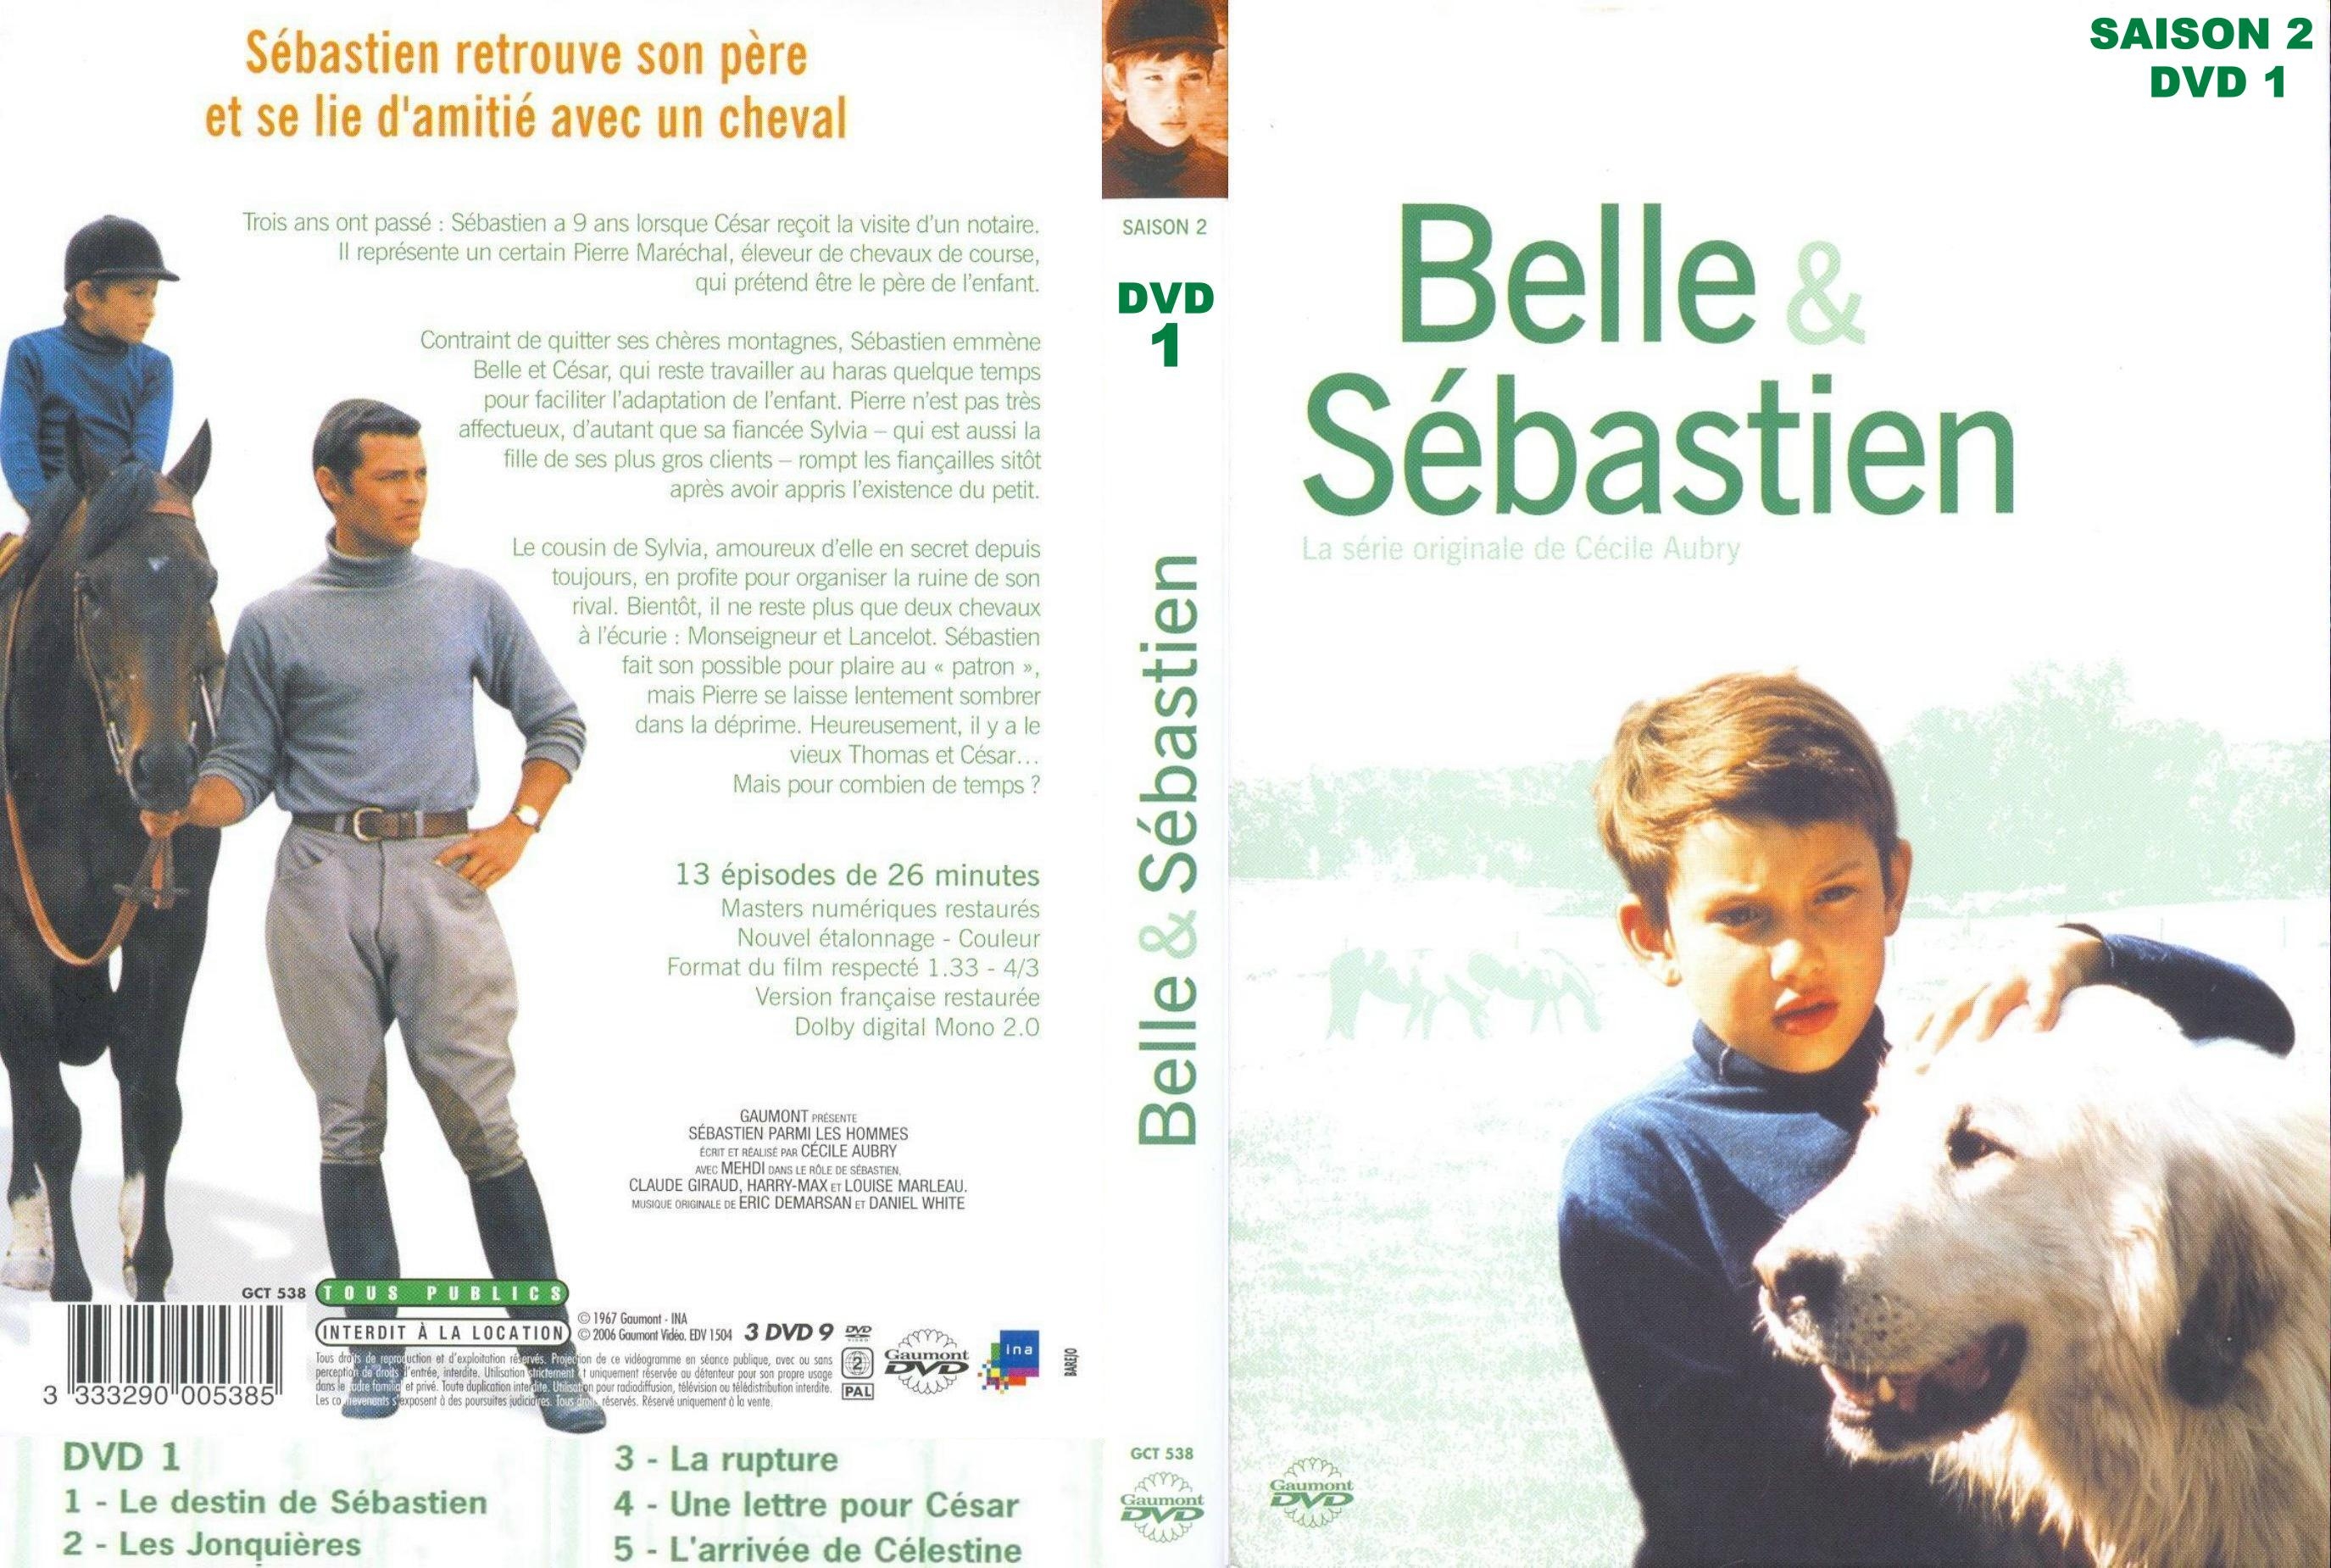 Jaquette DVD Belle et Sebastien Saison 2 dvd 1